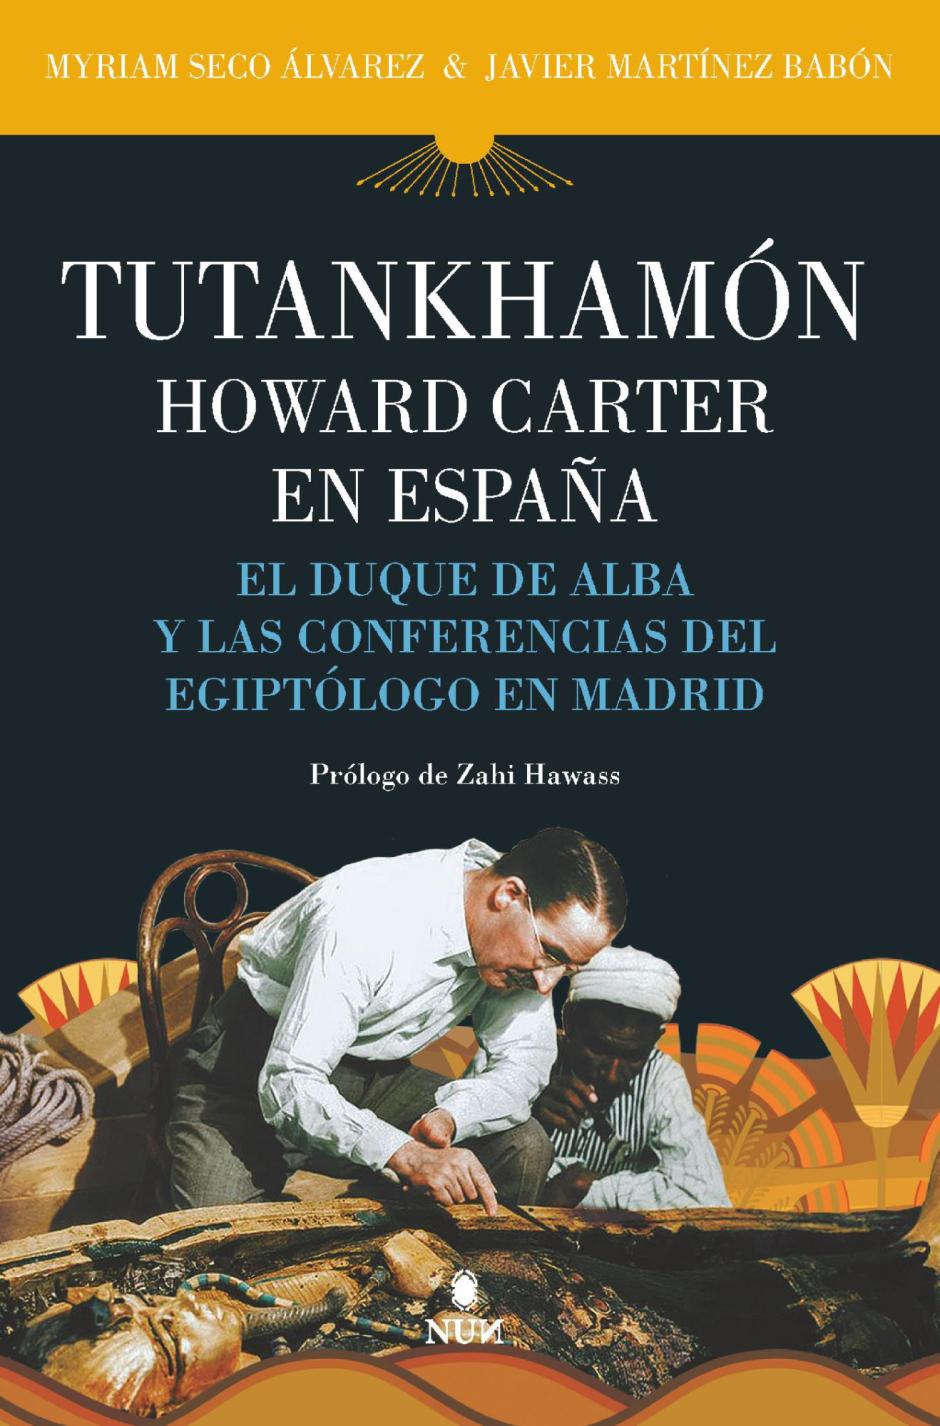 El libro 'Tutankhamón en España. Howard Carter, el duque de Alba y las conferencias de Madrid', de Myriam Seco Álvarez y Xavier Martínez Babón